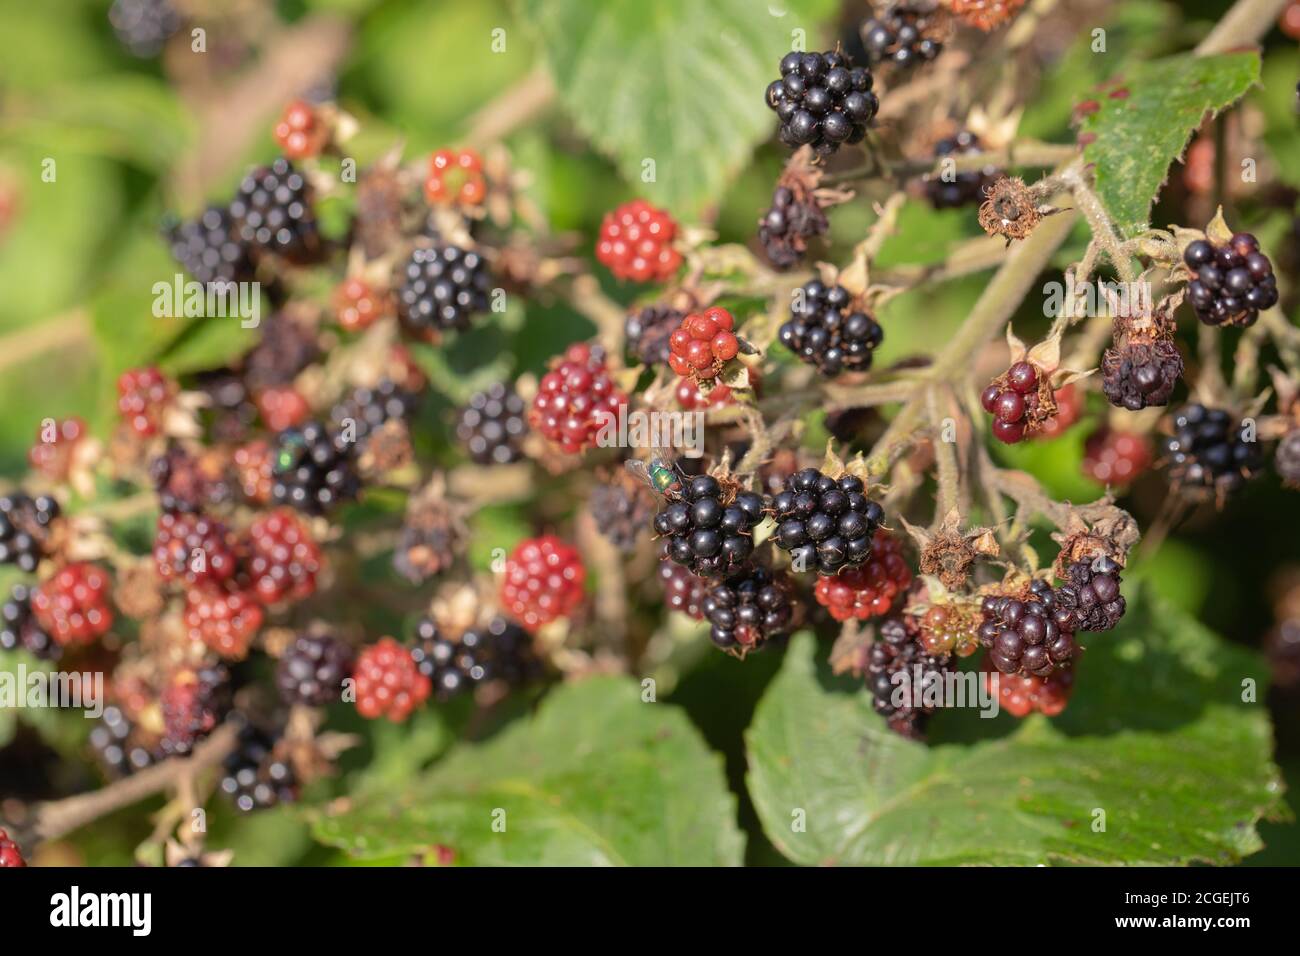 Bacche nere (Rubus fruticosus). Singoli segmenti, bacche, in diverse fasi di maturazione e decomposizione, attirando mosca di verdattoli, Diptera. Foto Stock